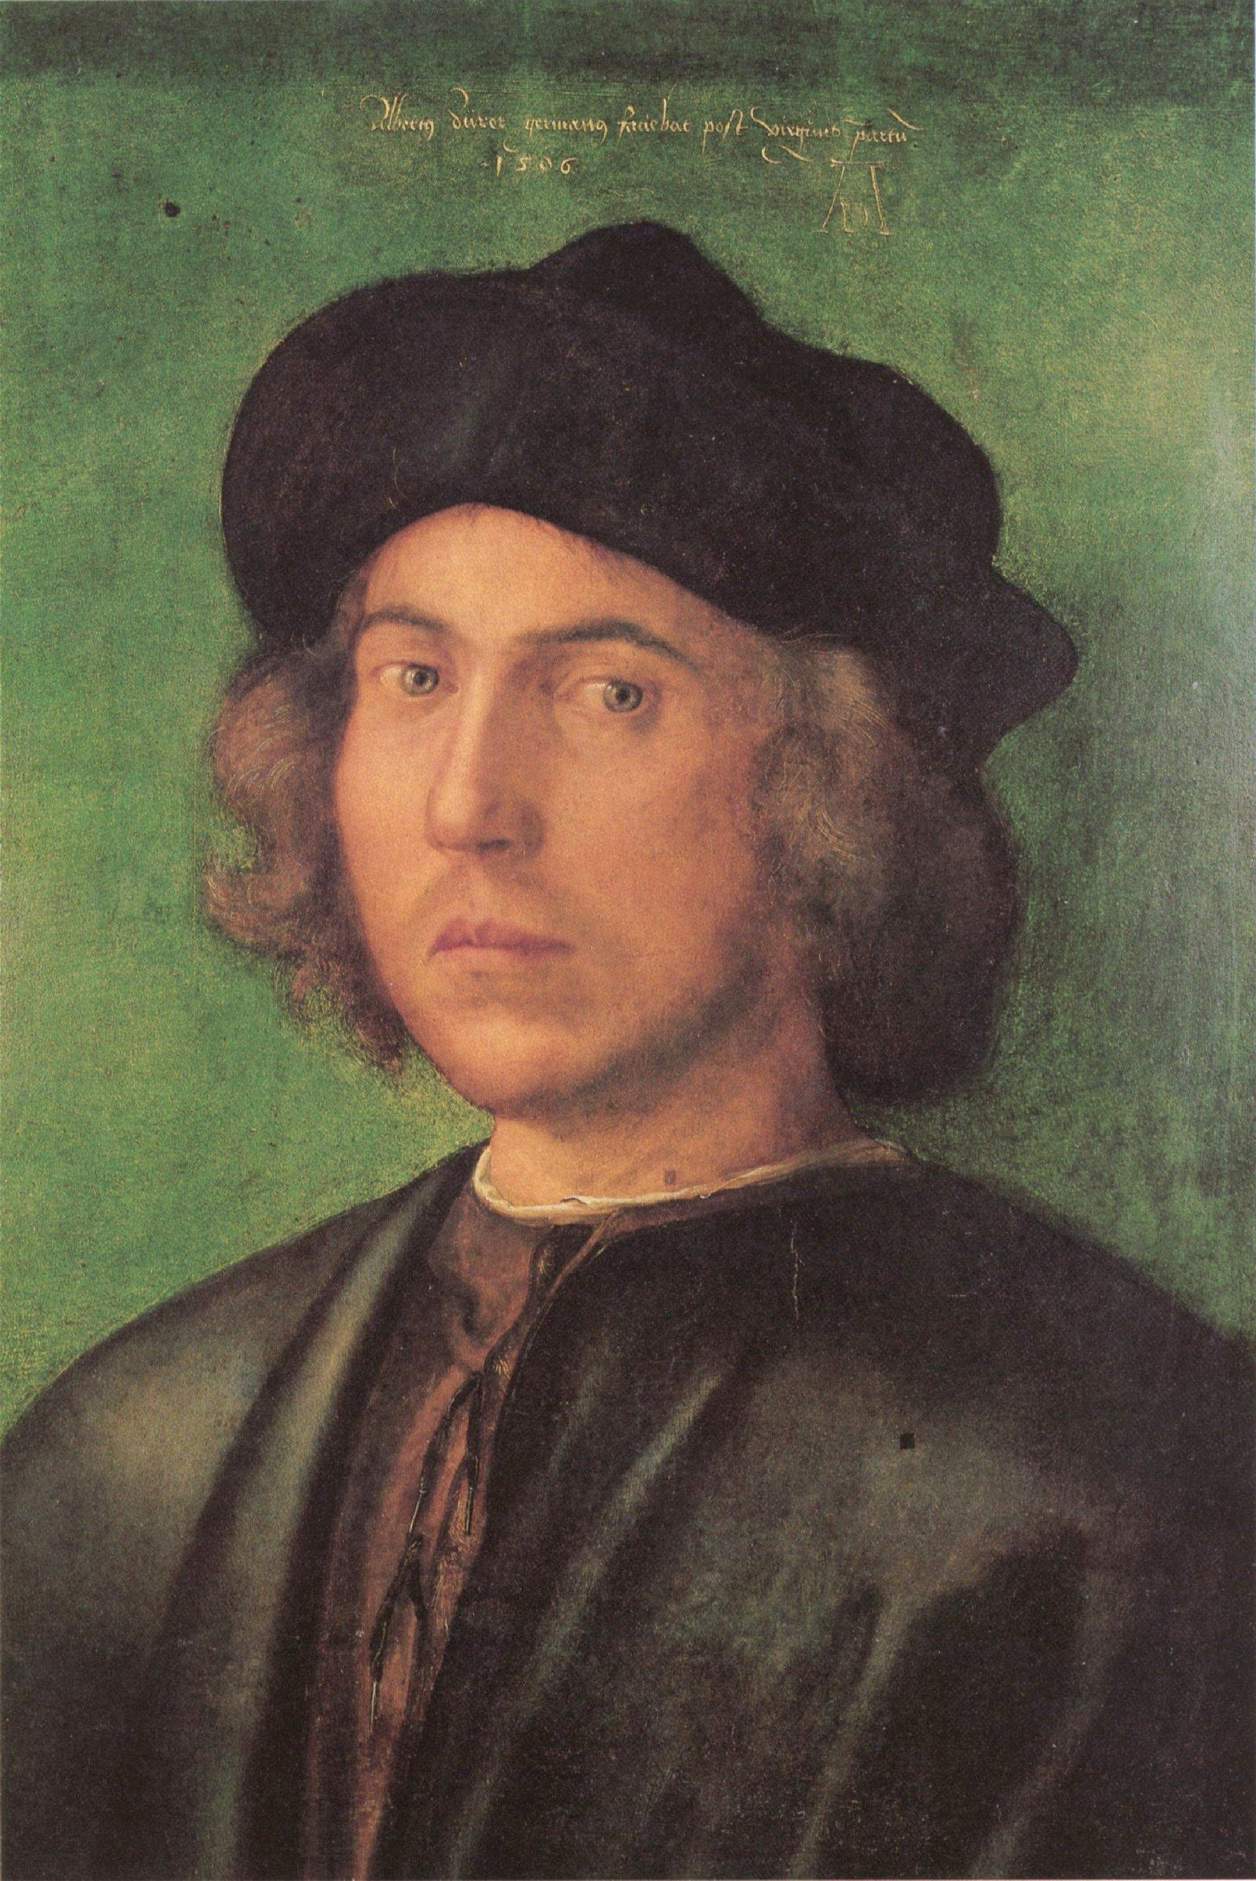 Dürer e la pittura nordica nelle collezioni di Palazzo Rosso